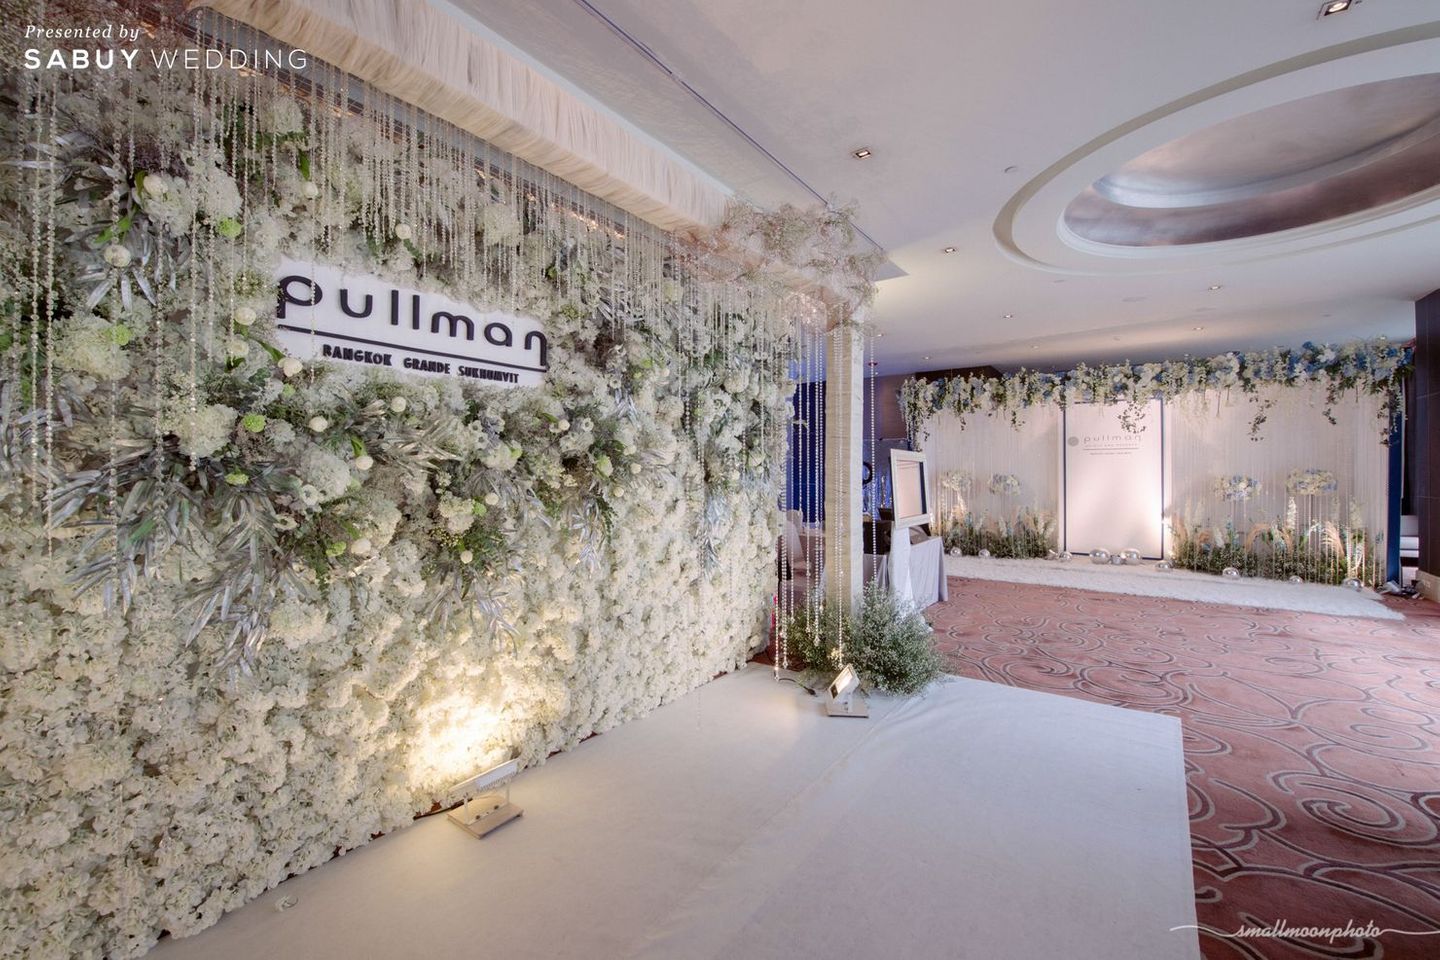 สถานที่แต่งงาน,สถานที่จัดงานแต่งงาน,backdrop งานแต่ง,จัดดอกไม้งานแต่ง,โรงแรม,จัดงานแต่งงาน Pullman Bangkok Grande Sukhumvit สถานที่แต่งงานใจกลางกรุง ย่านสุขุมวิท